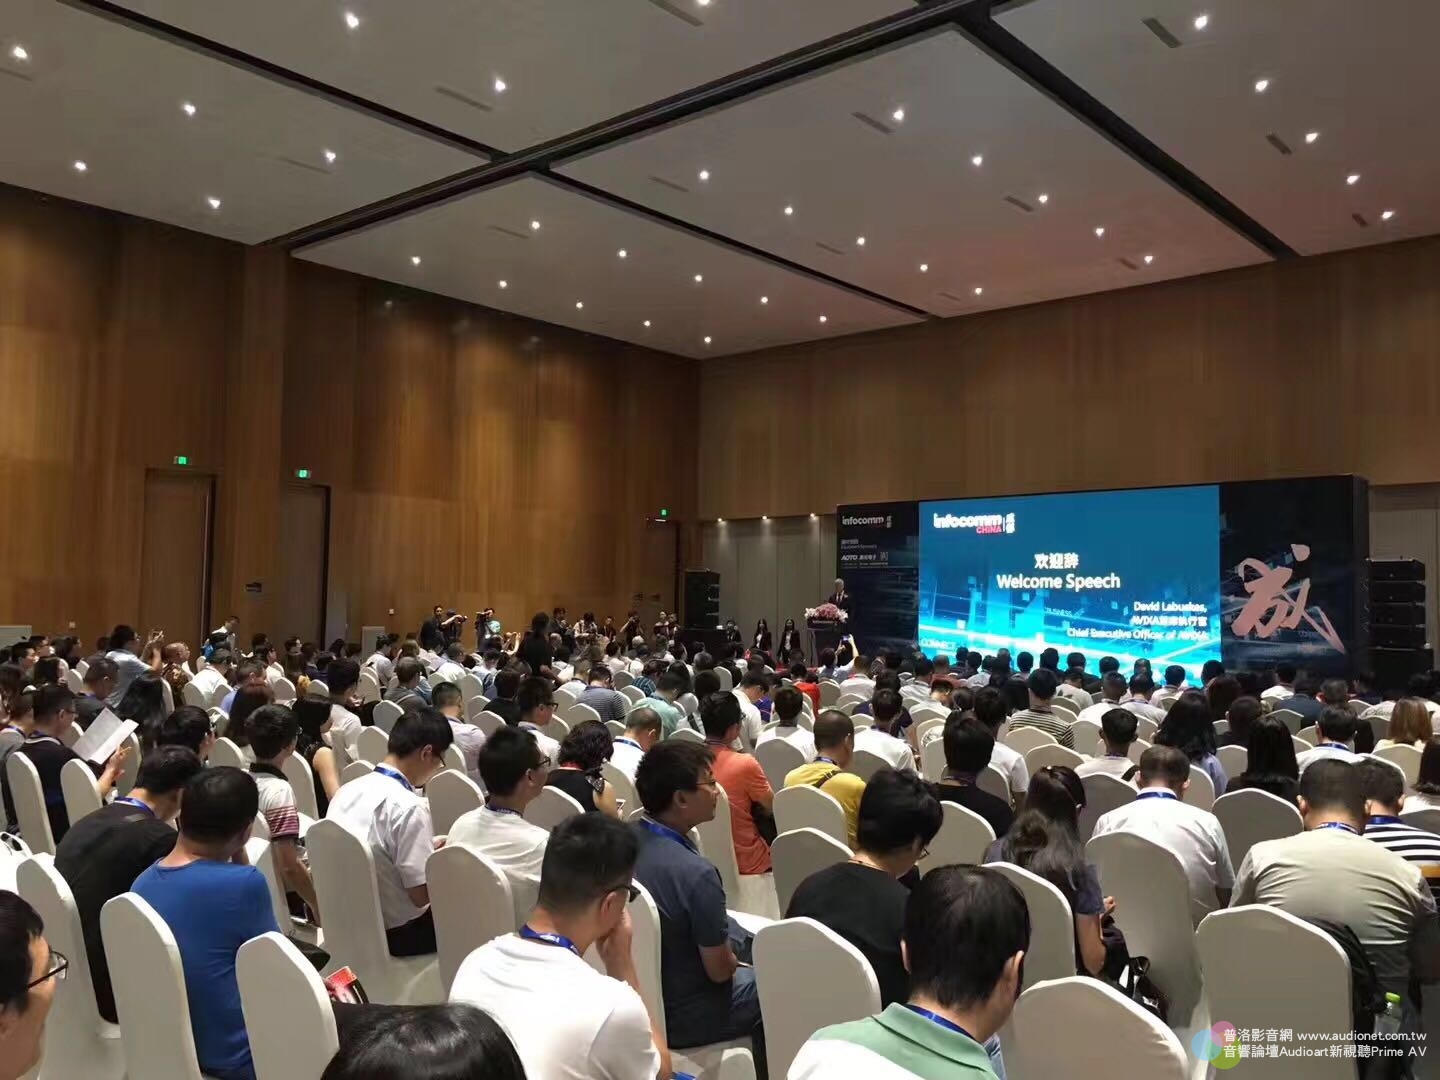 聚焦成都的專業影音盛會！成都InfoComm China 2018